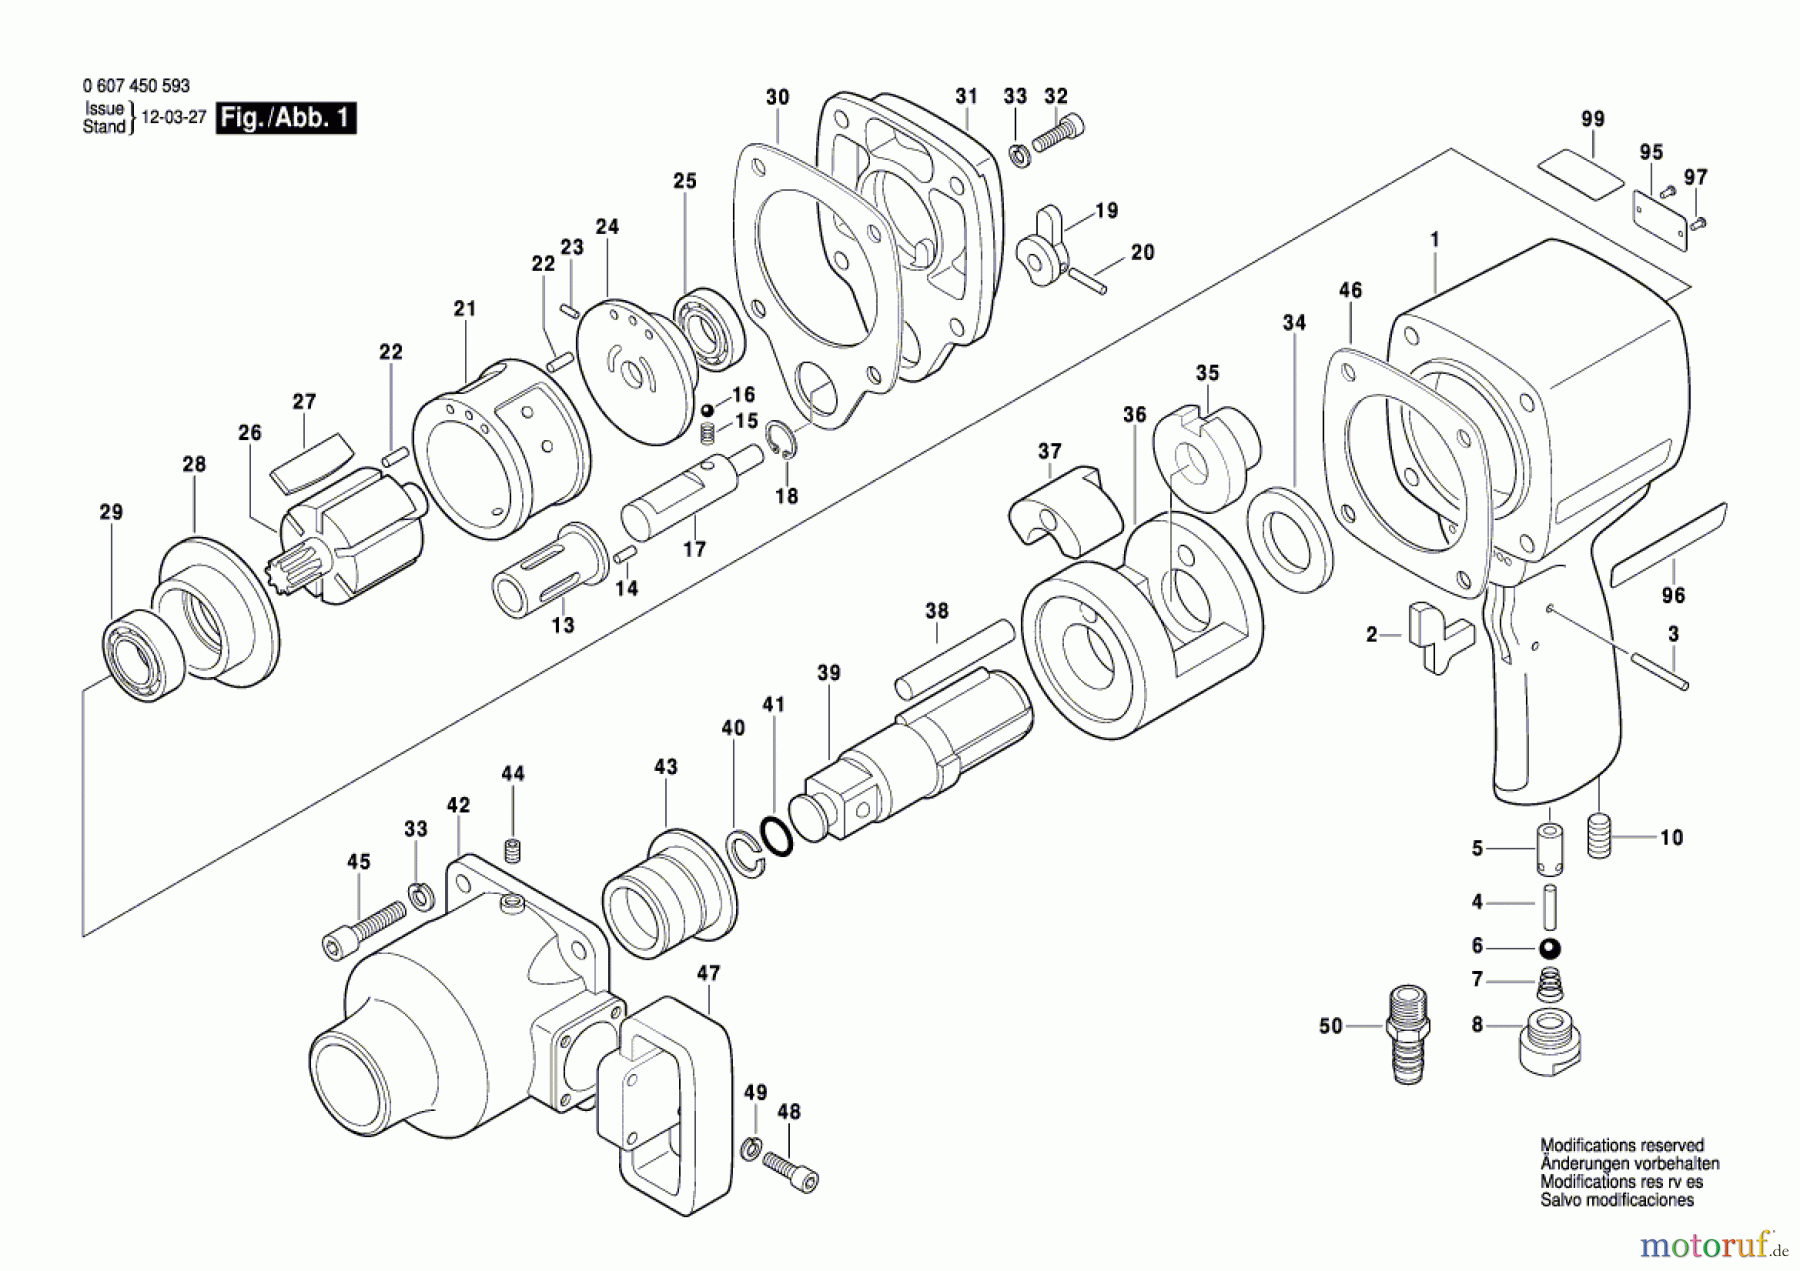  Bosch Werkzeug Pw-Schlagschrauber-Ind ---- Seite 1